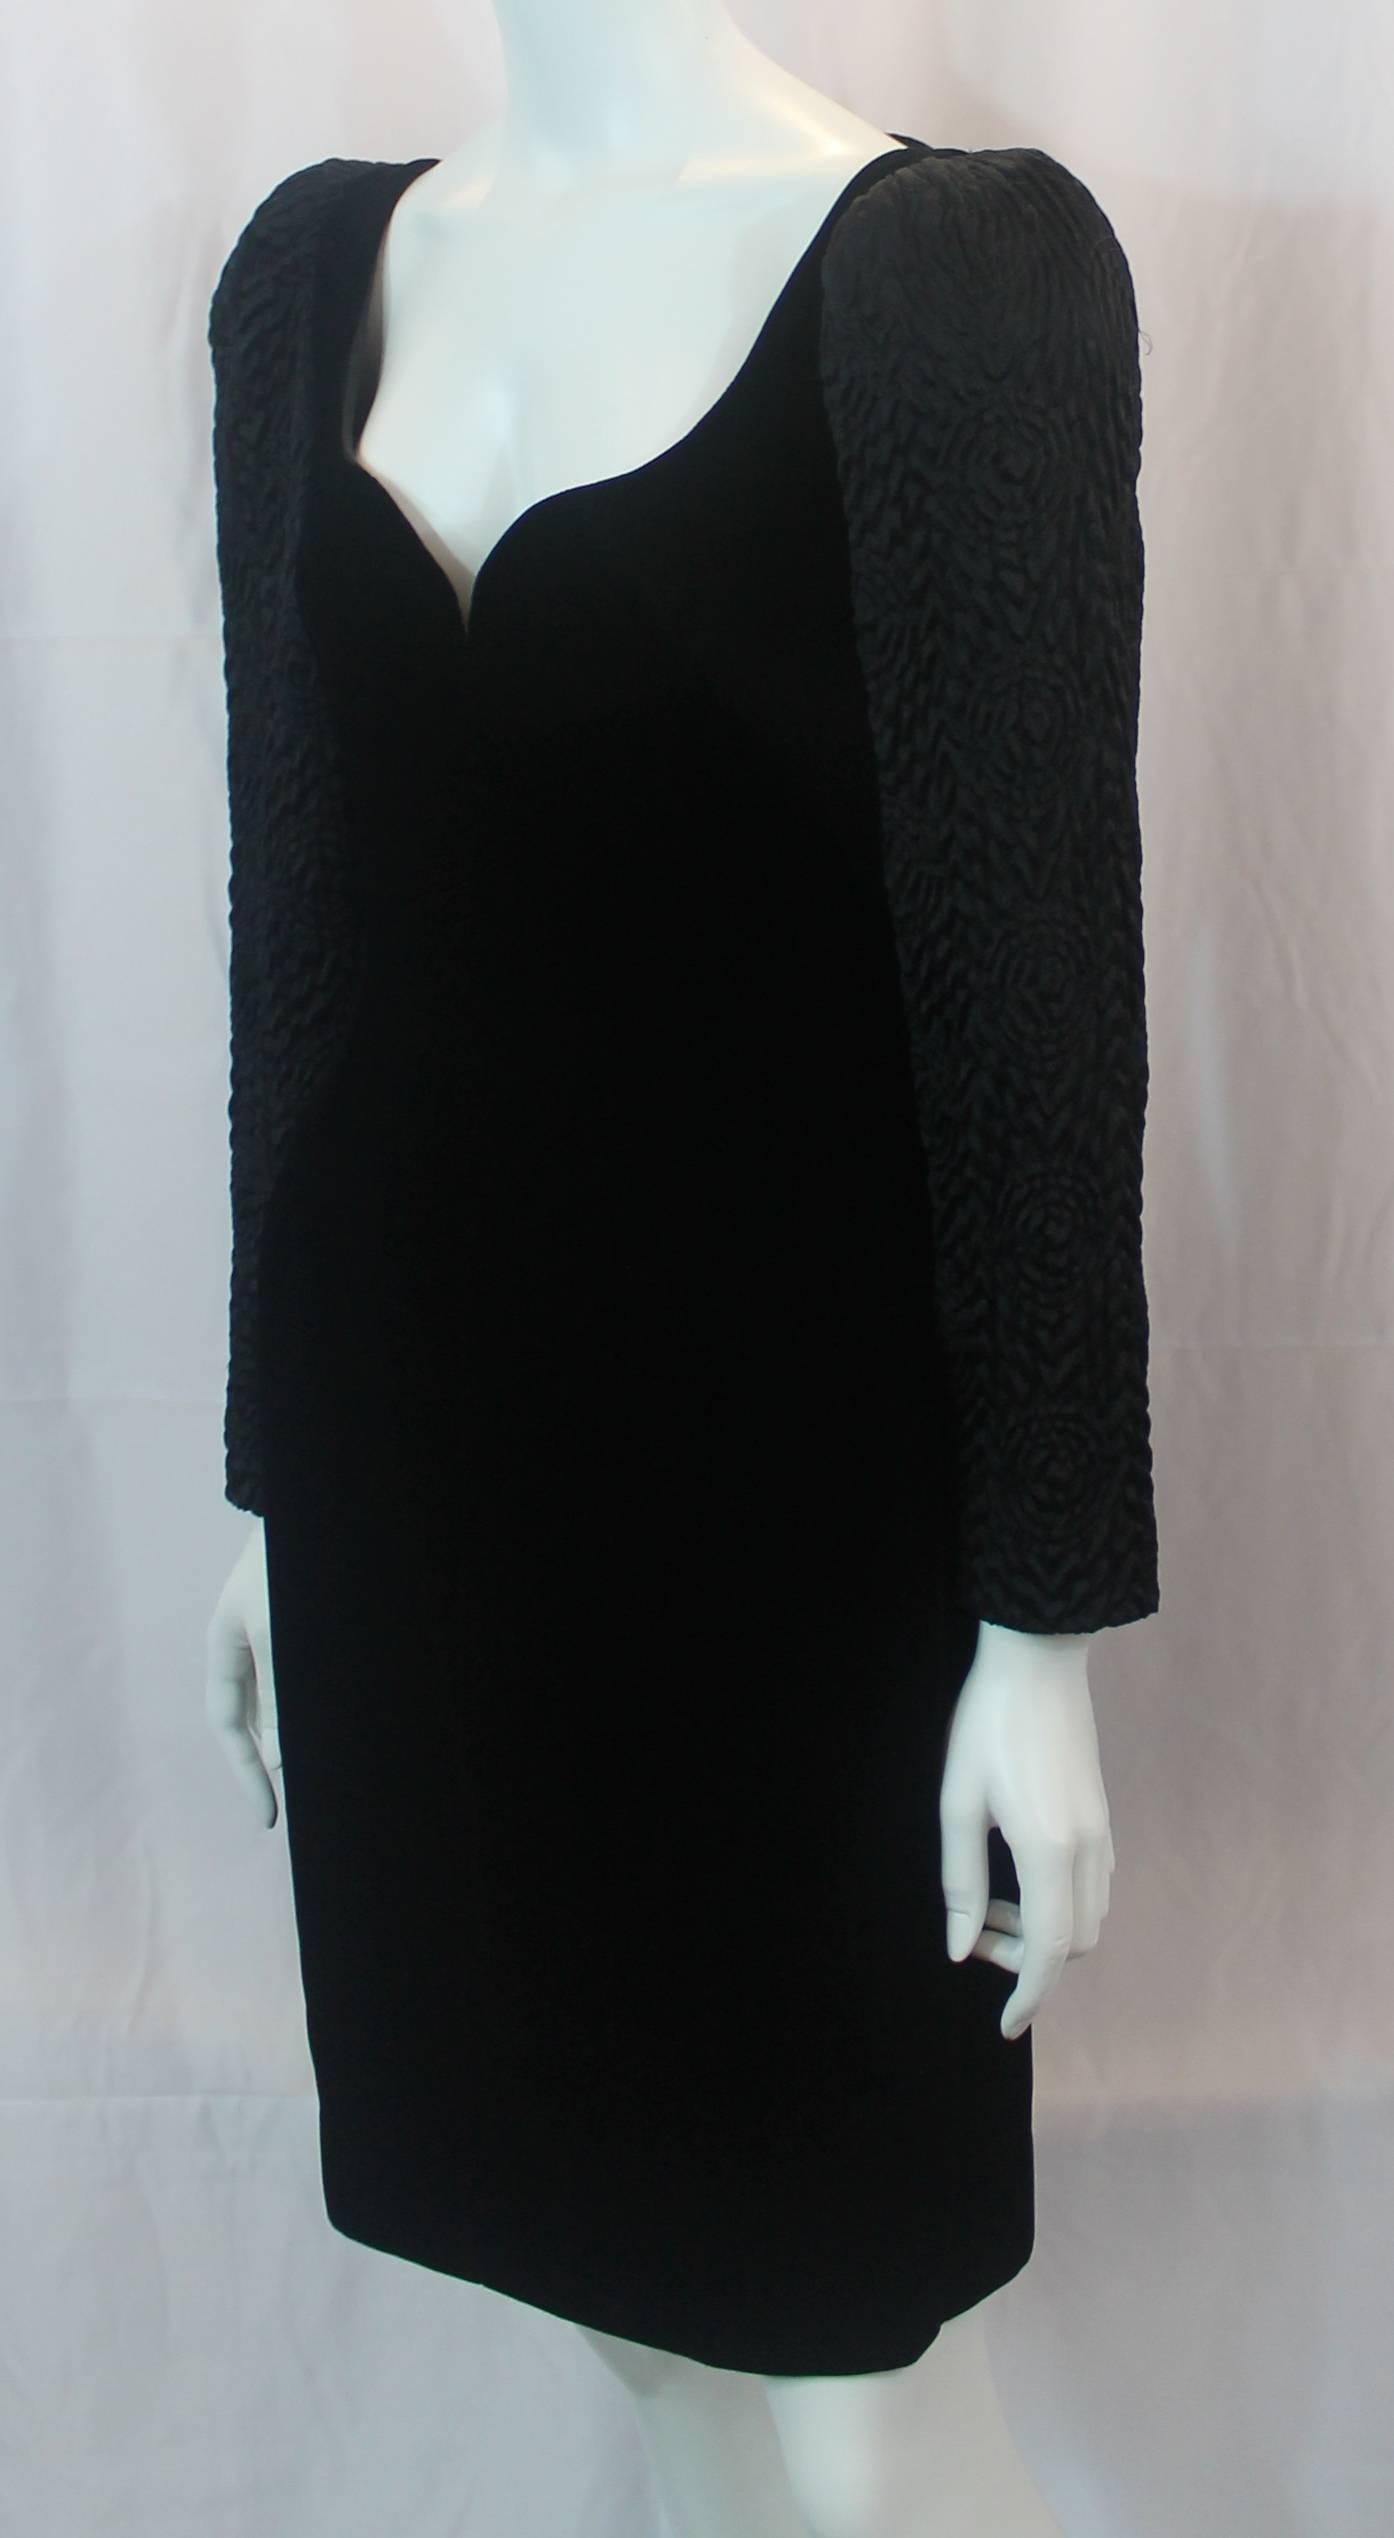 Adele Simpson Vintage Abendkleid aus schwarzem Samt und Seide - ca. 1980er Jahre. Dieses schwarze Vintage-Kleid hat einen herzförmigen Ausschnitt, ein Mieder aus Samt, lange Ärmel aus gesteppter Seide, Schulterpolster und einen Reißverschluss am